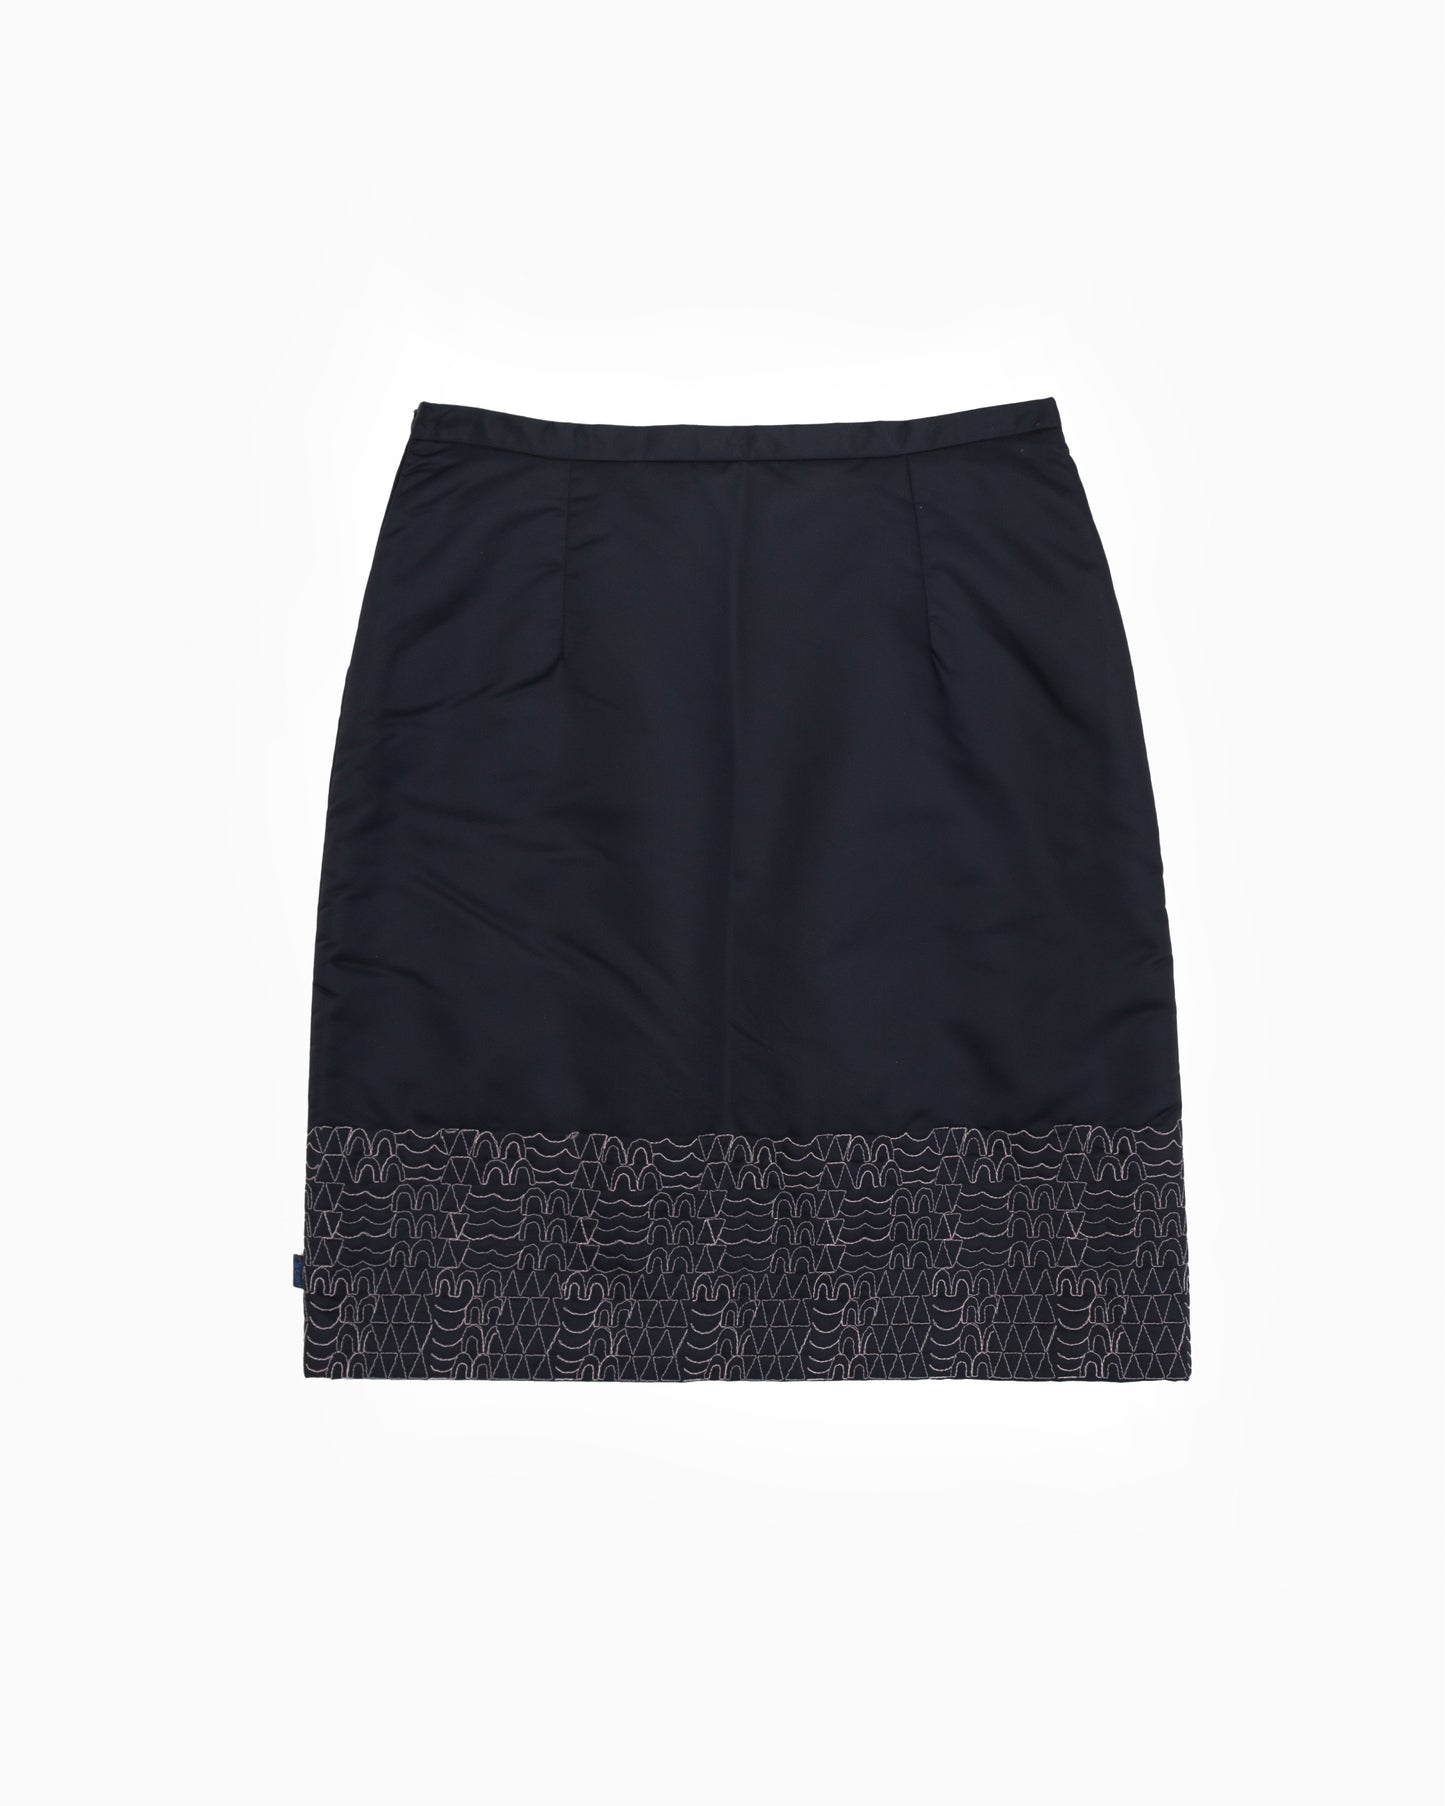 Christian Lacroix Padded Skirt